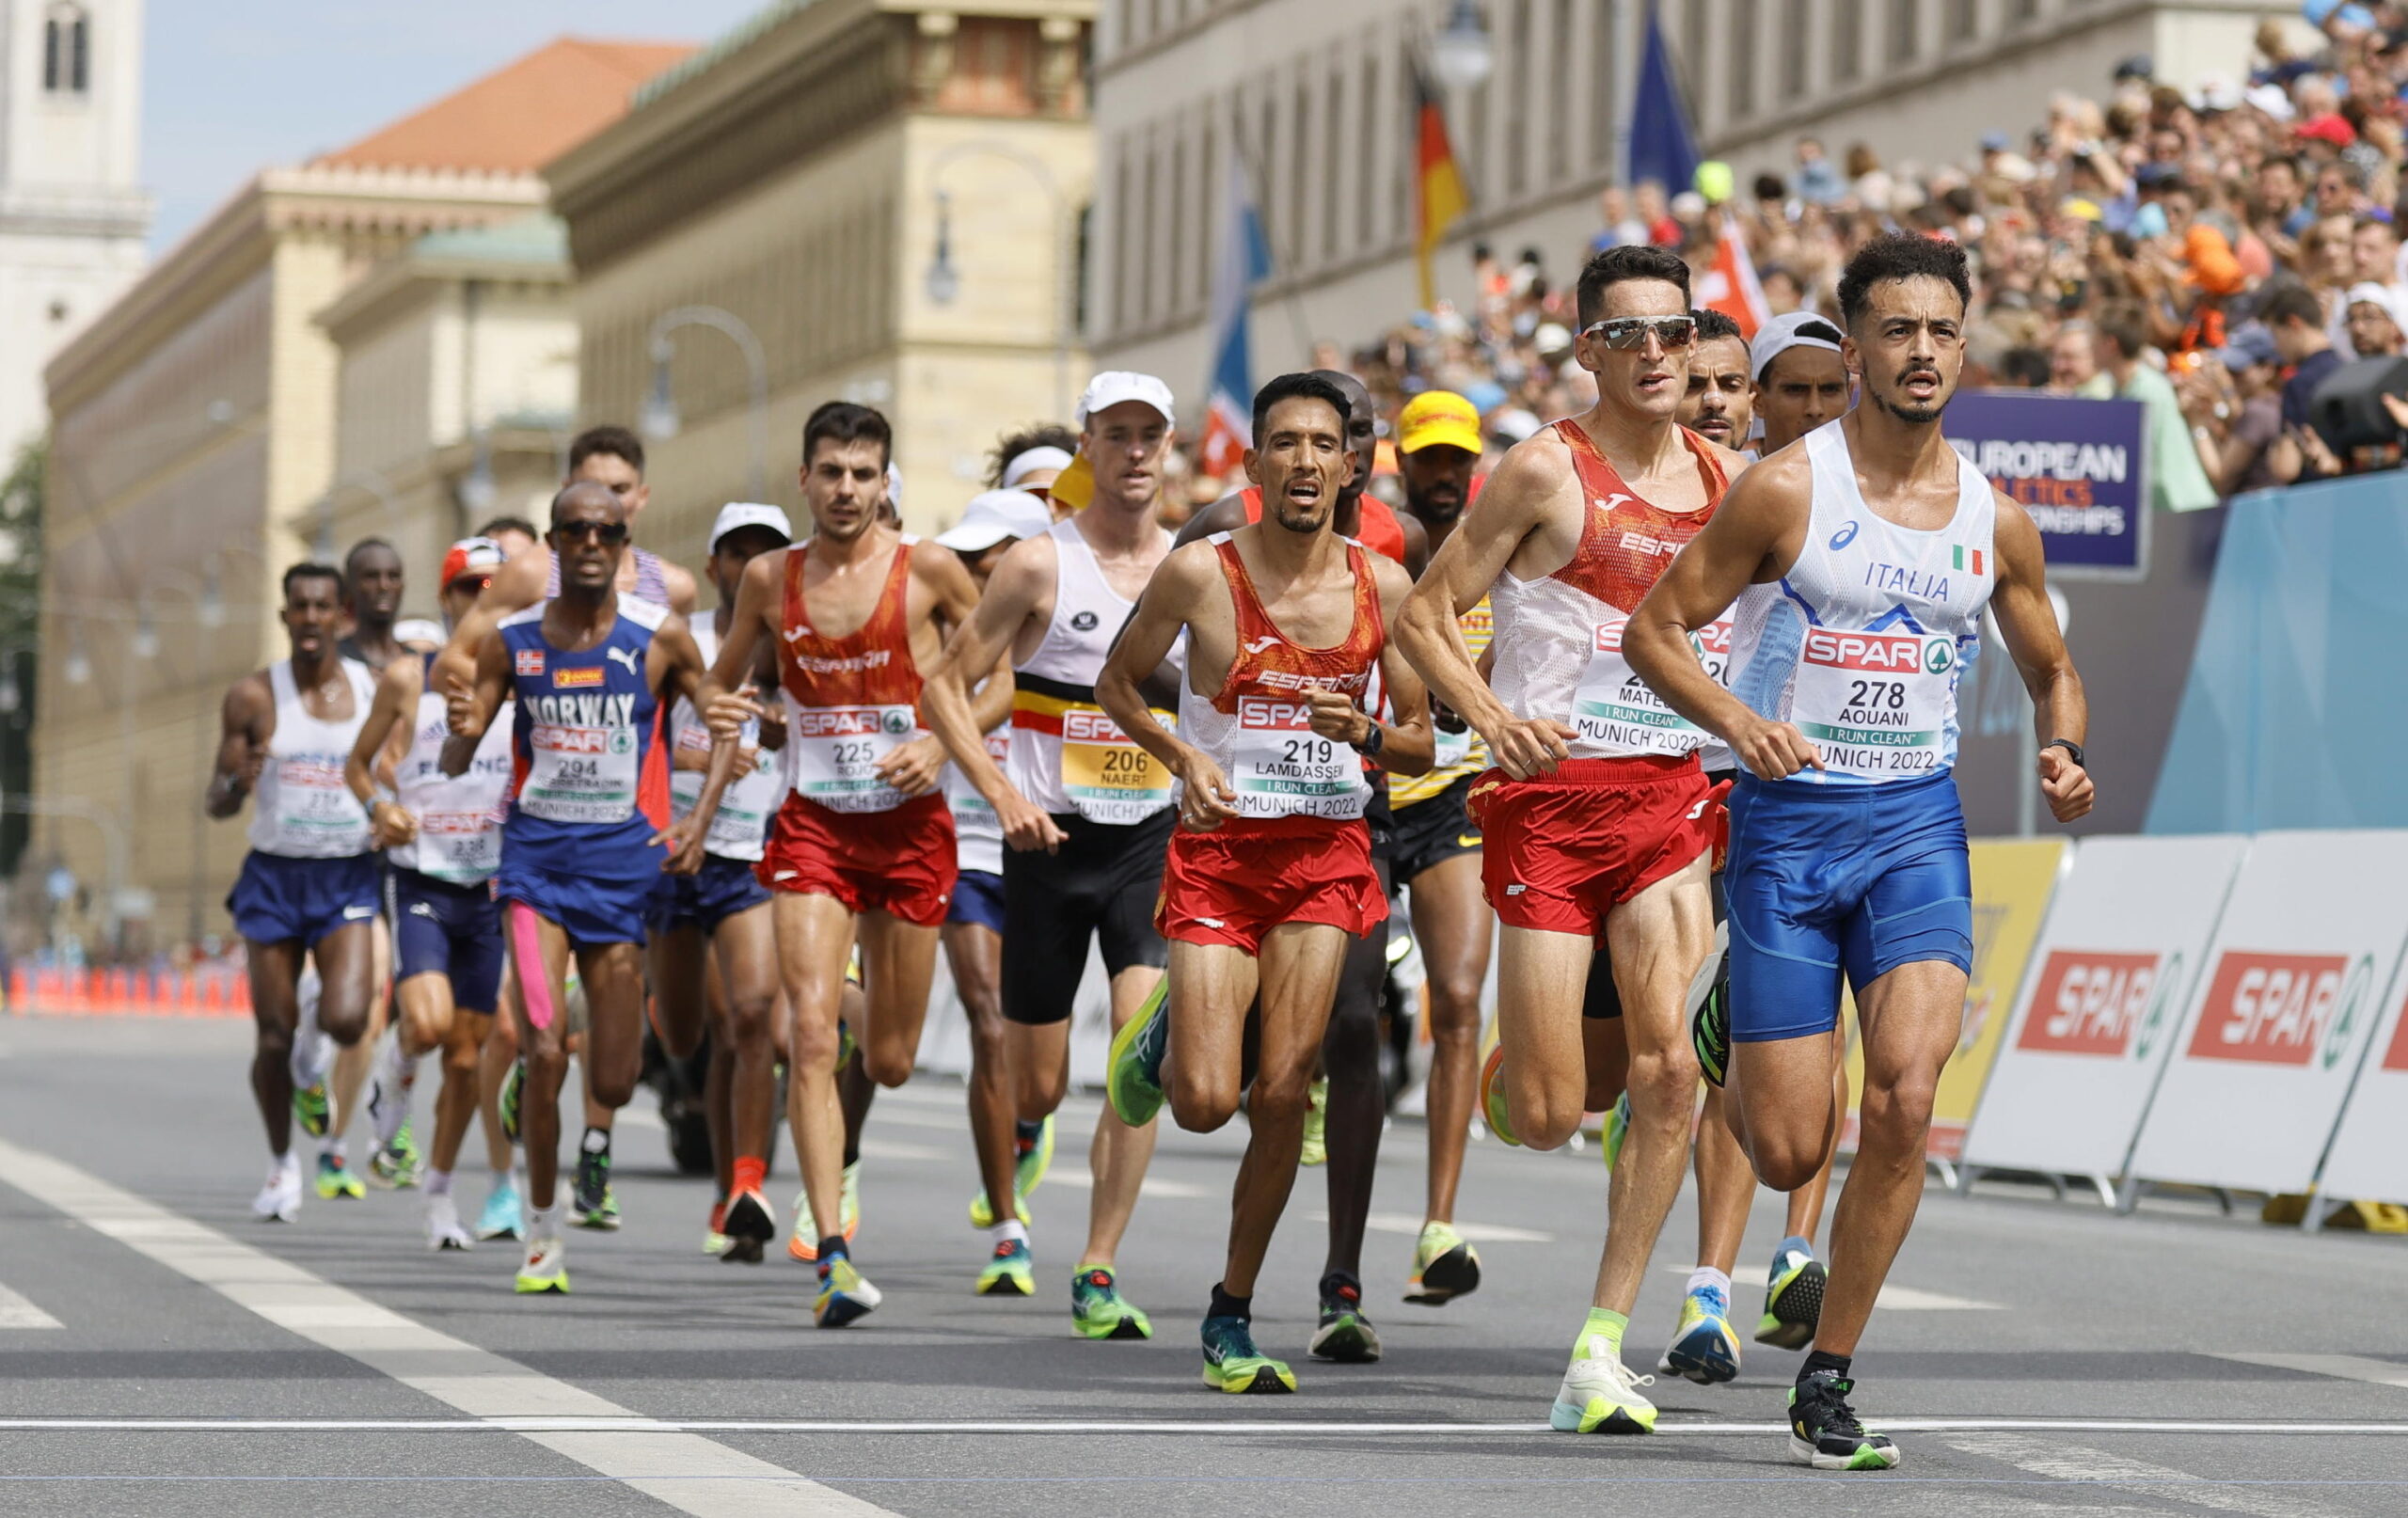 Gli insulti razzisti al maratoneta azzurro Iliass Aouani: «Non sei italiano». Lui risponde: «I veri italiani non sono razzisti»